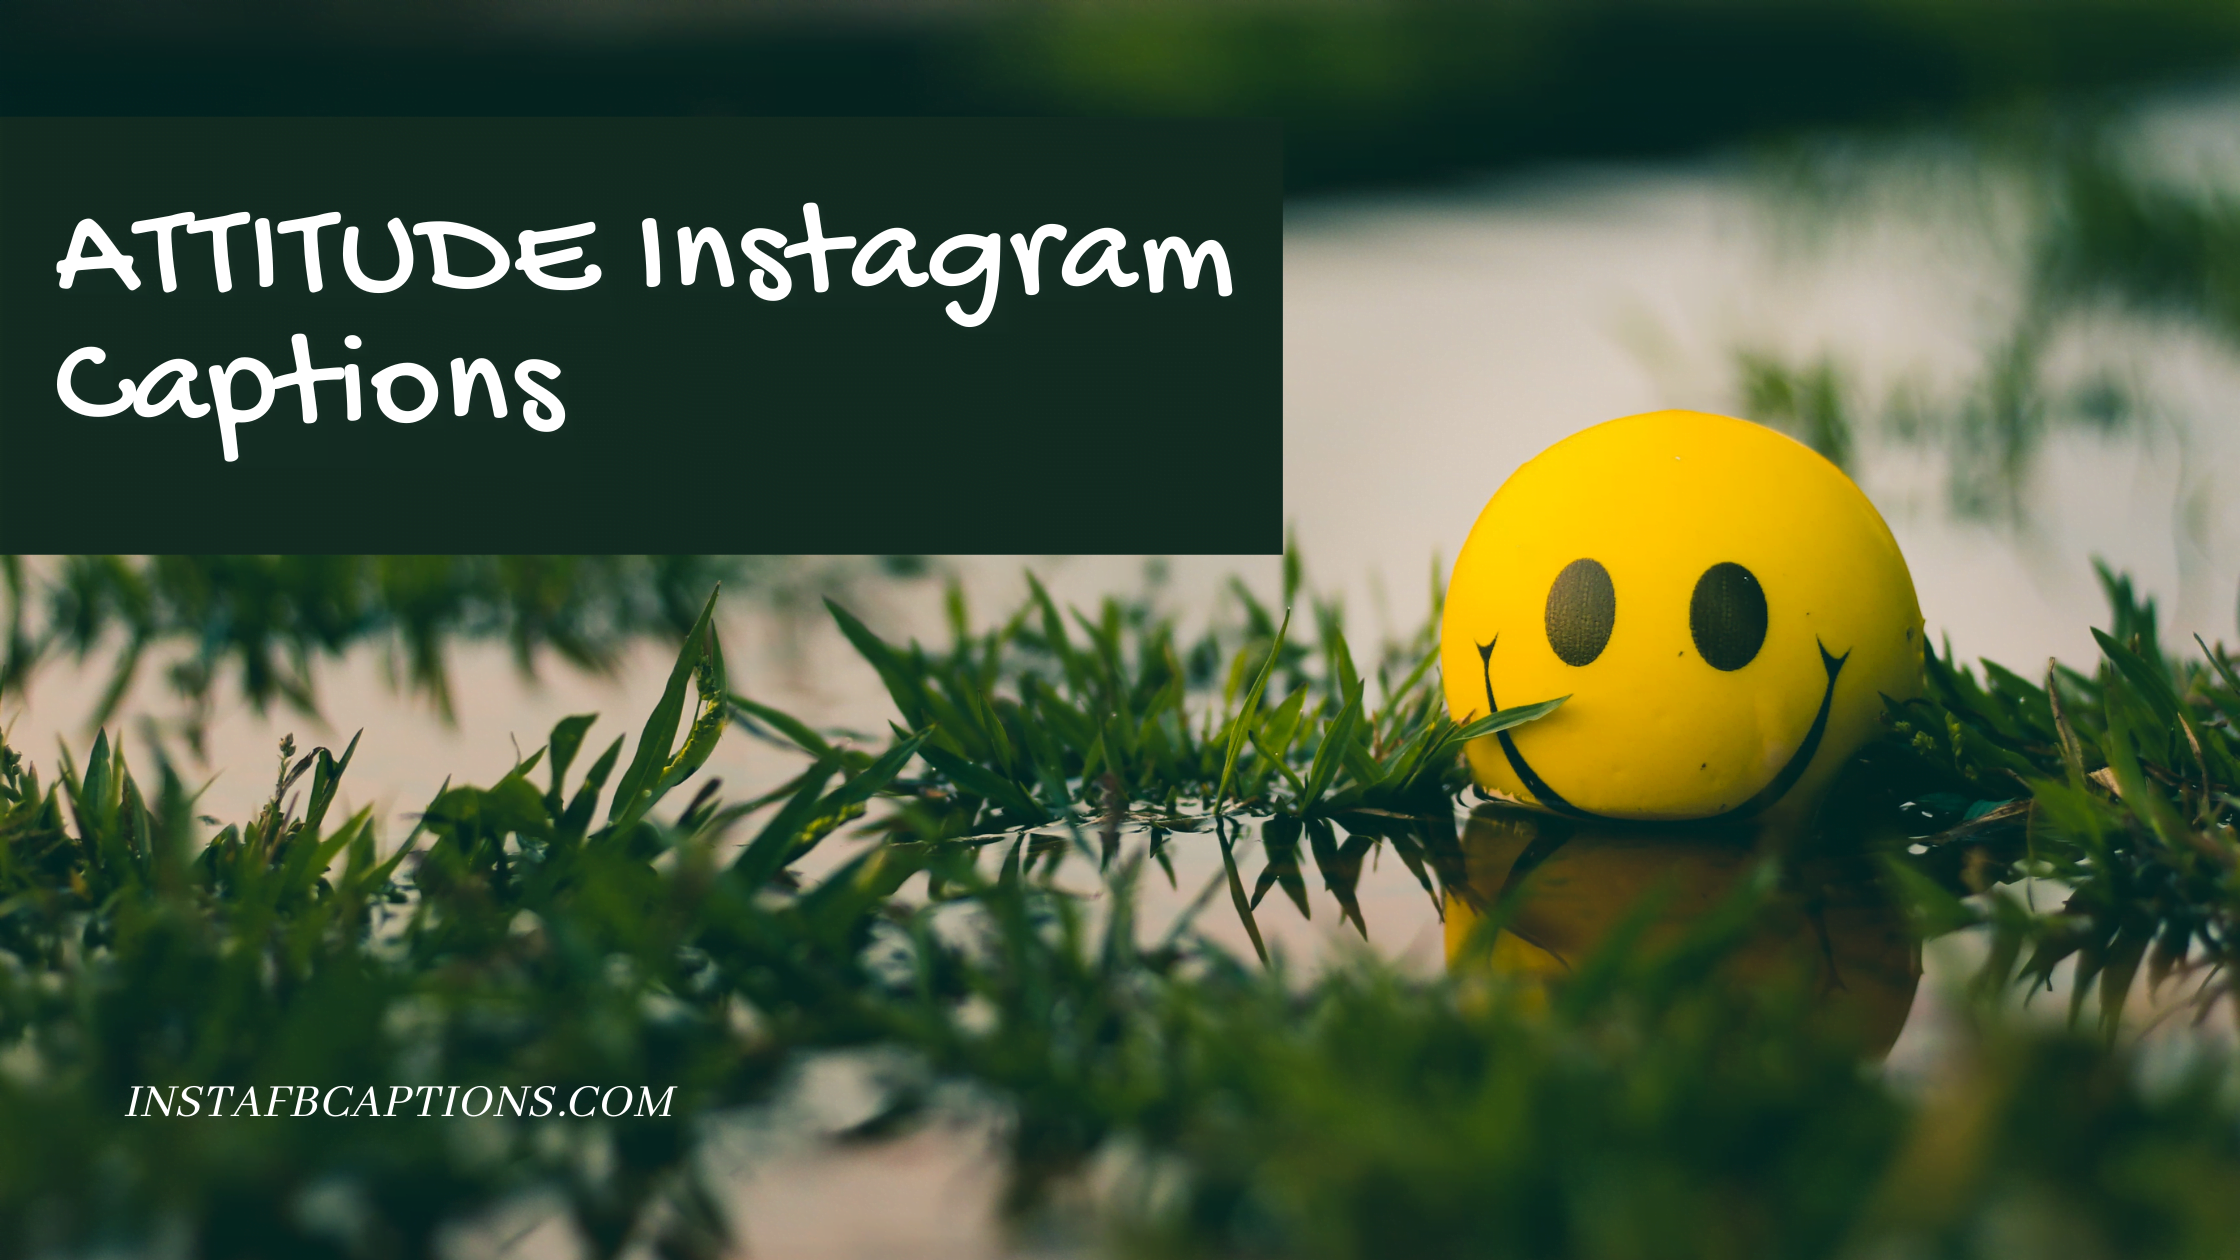 Attitude Instagram Captions  - ATTITUDE Instagram Captions - [New] Attitude Captions for Boys Girls Instagram Posts in 2023